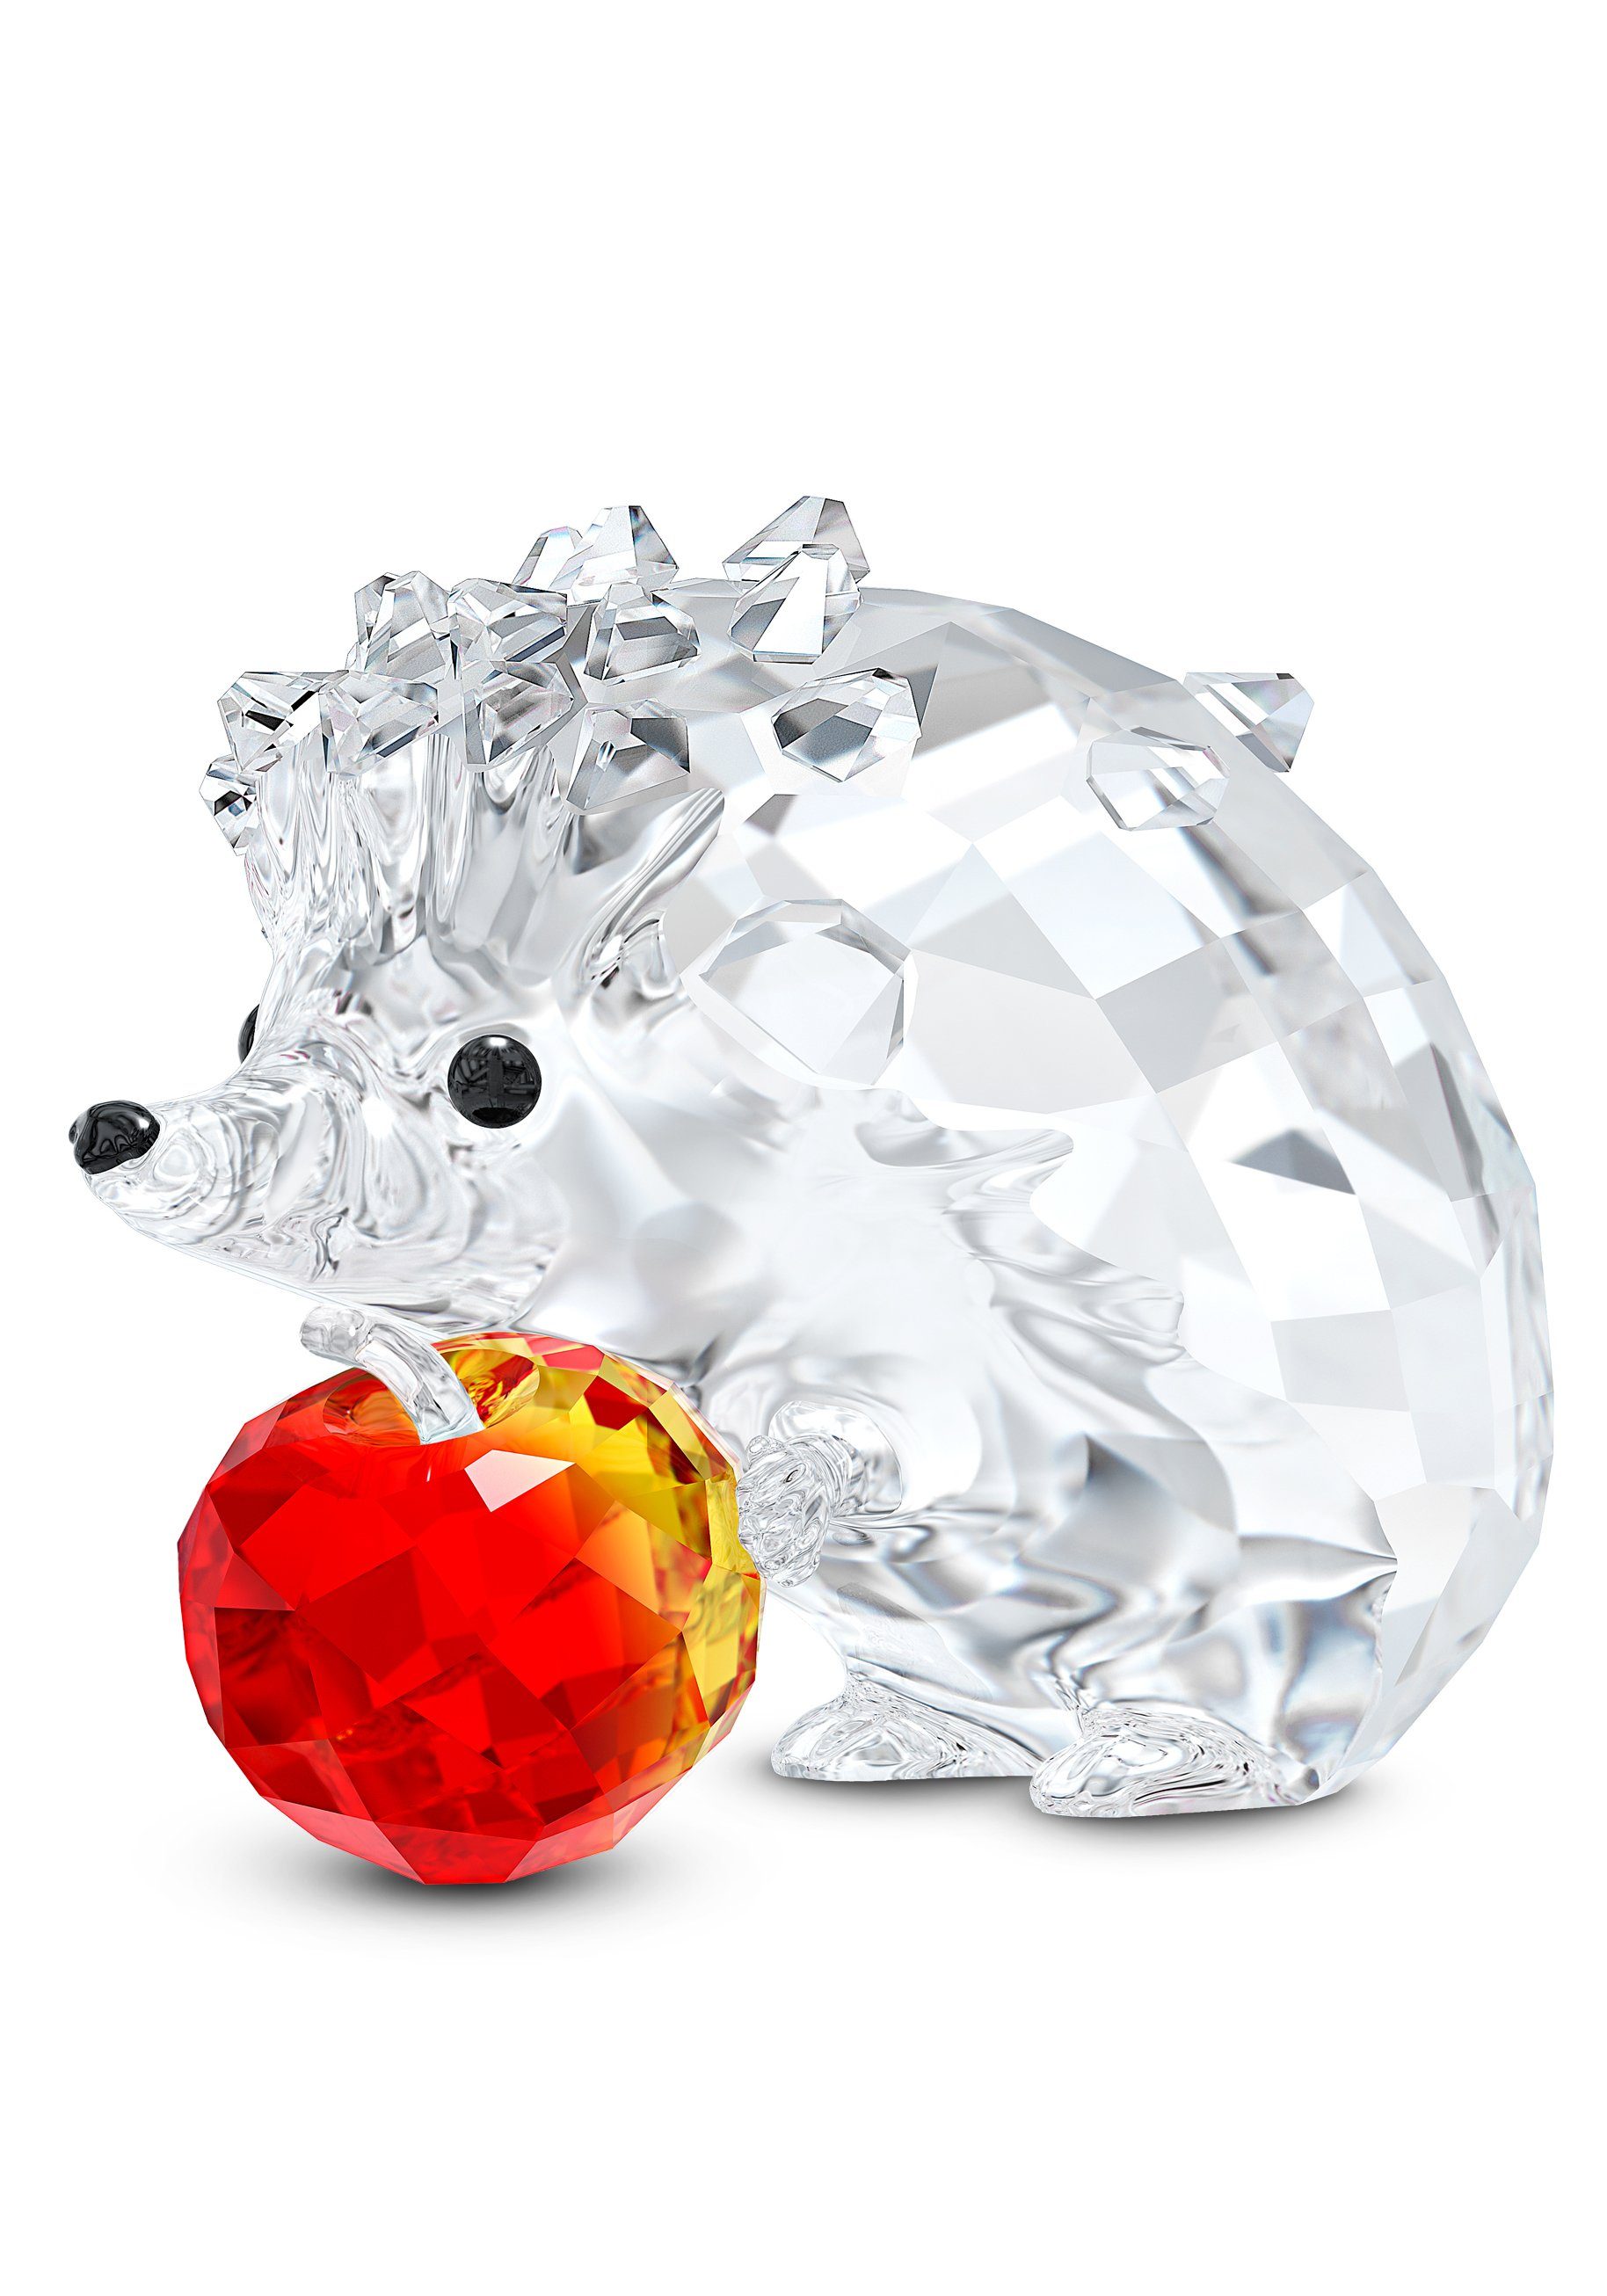 Swarovski Dekofigur Kristallfigur Igel mit Apfel, 5532203 (1 St), Swarovski® Kristall mit schwarzem Emaille